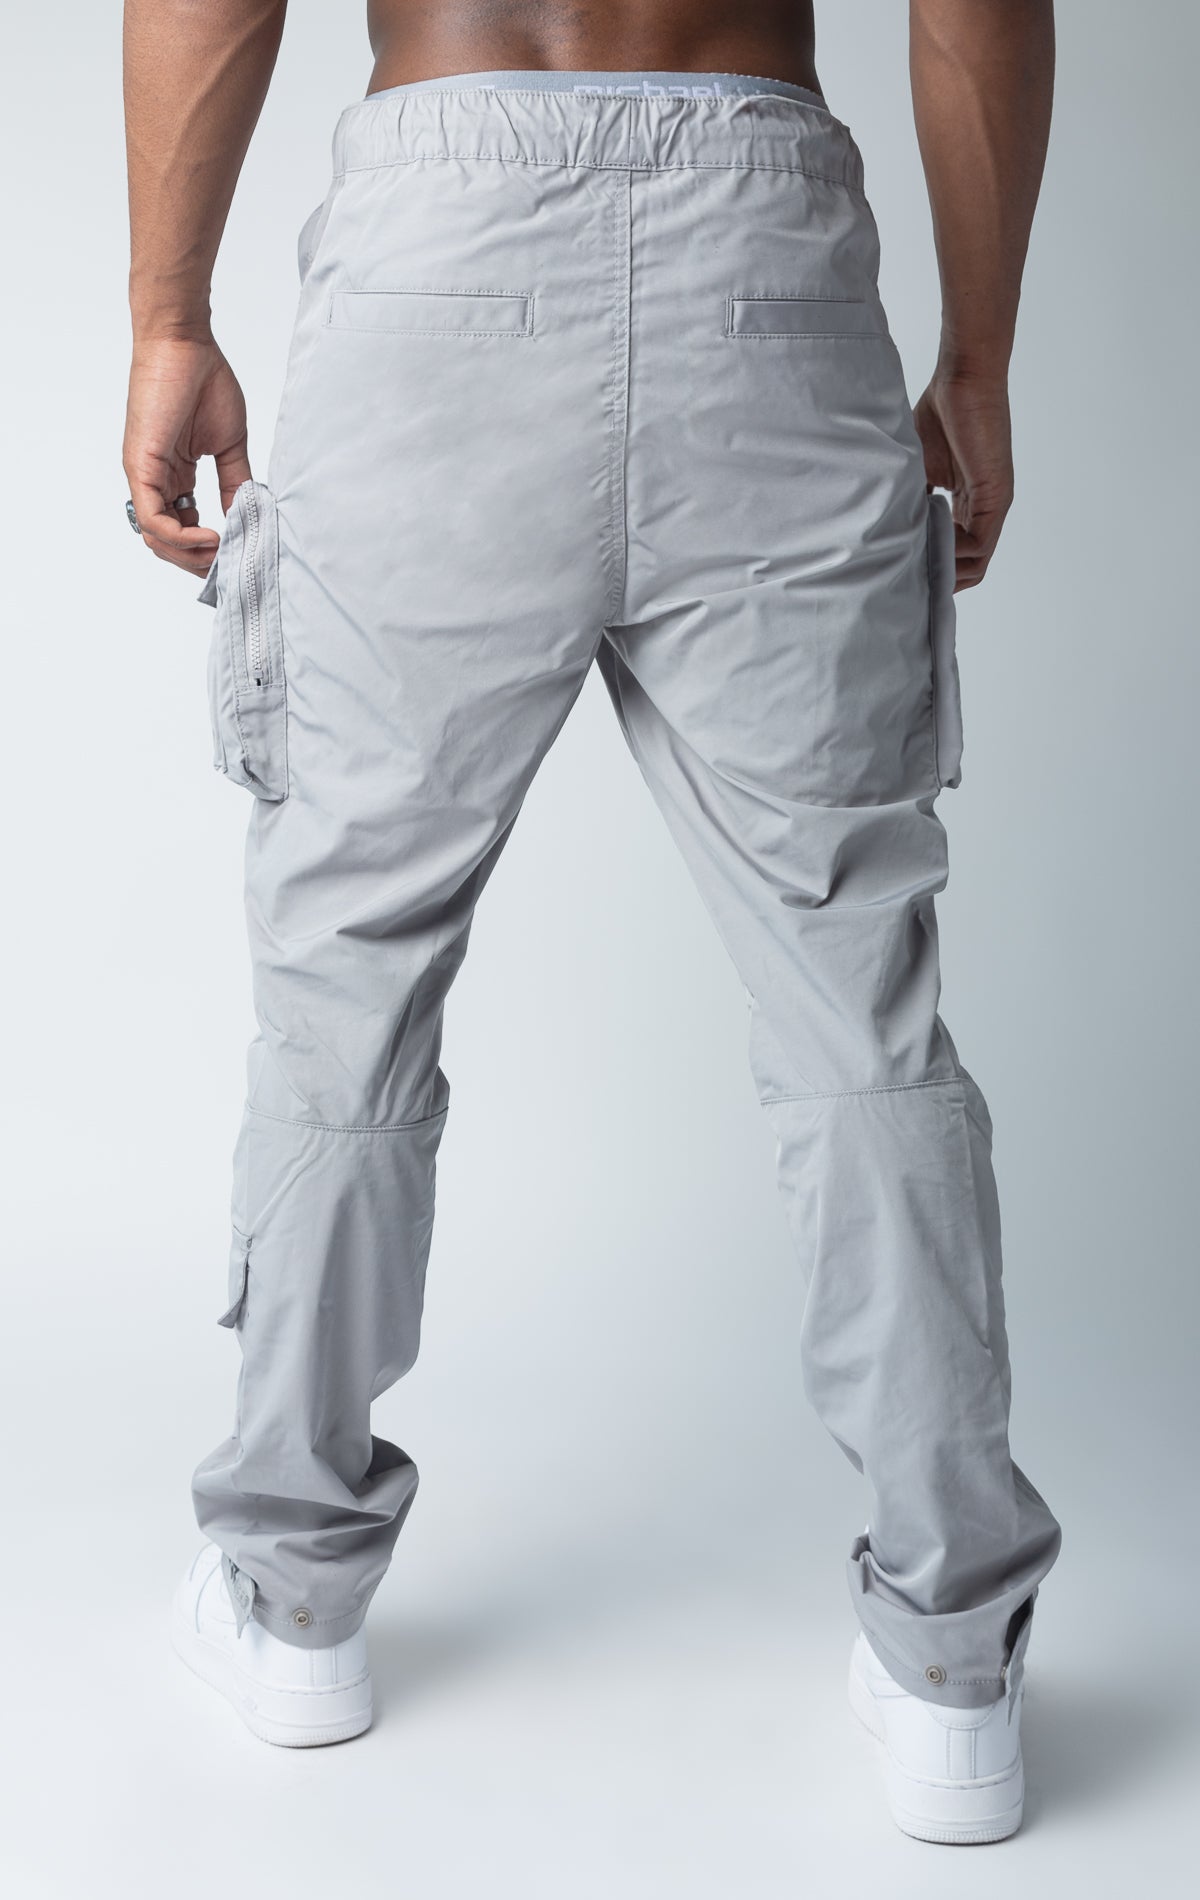 Grey windbreaker utility pants, sleek fit with an open bottom jogger style, back side